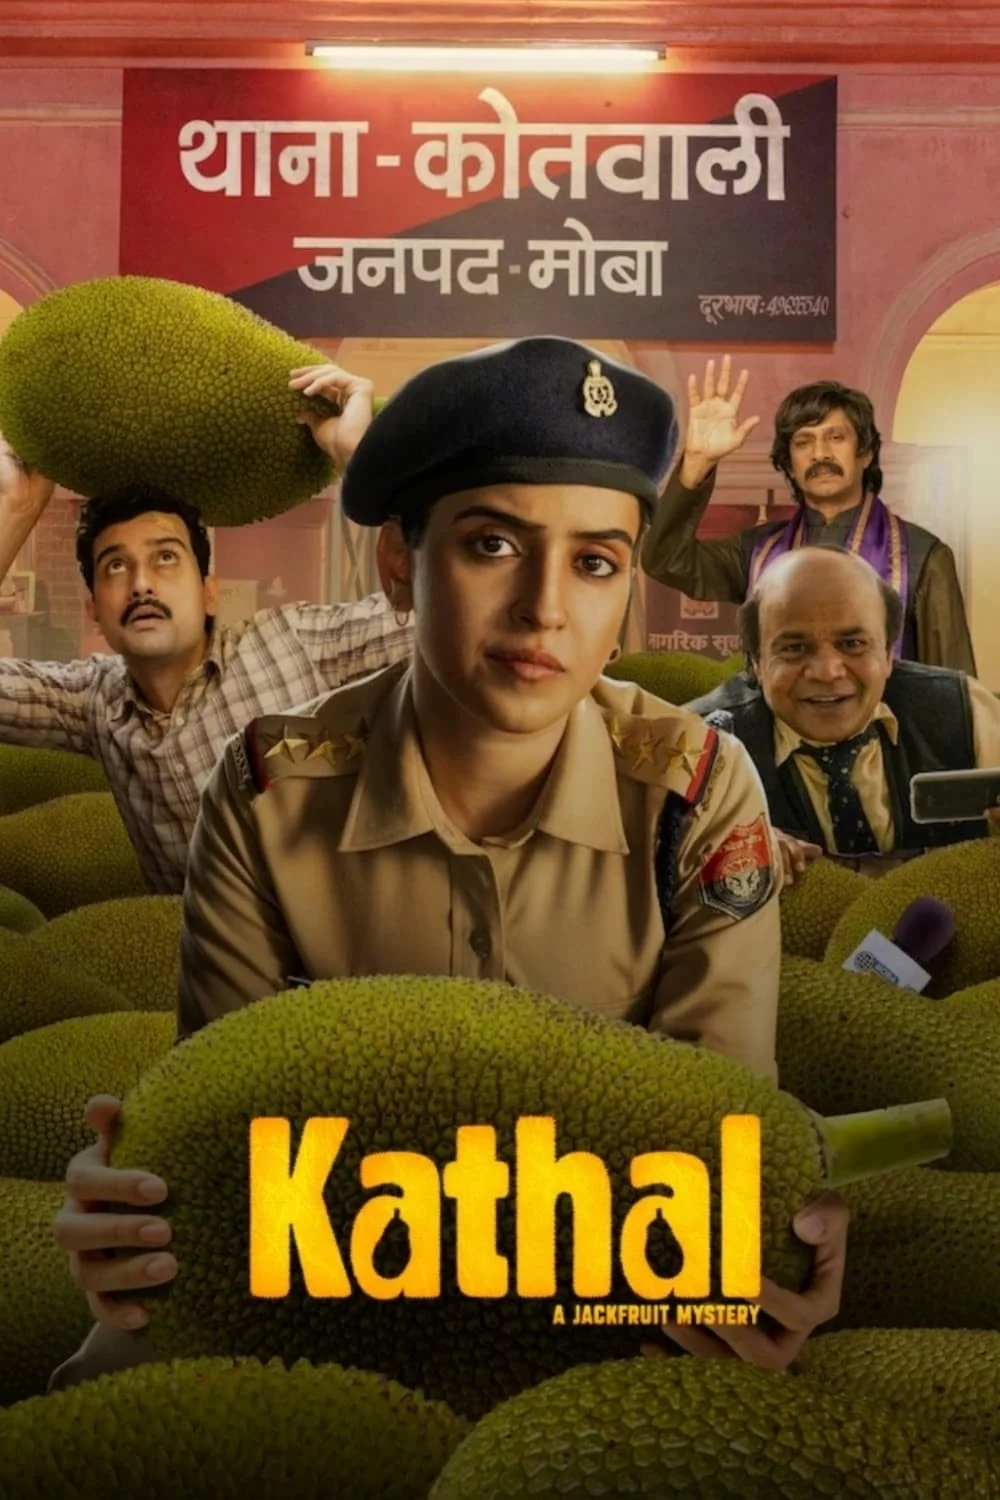 Photo du film : Kathal : Des fruits mal défendus